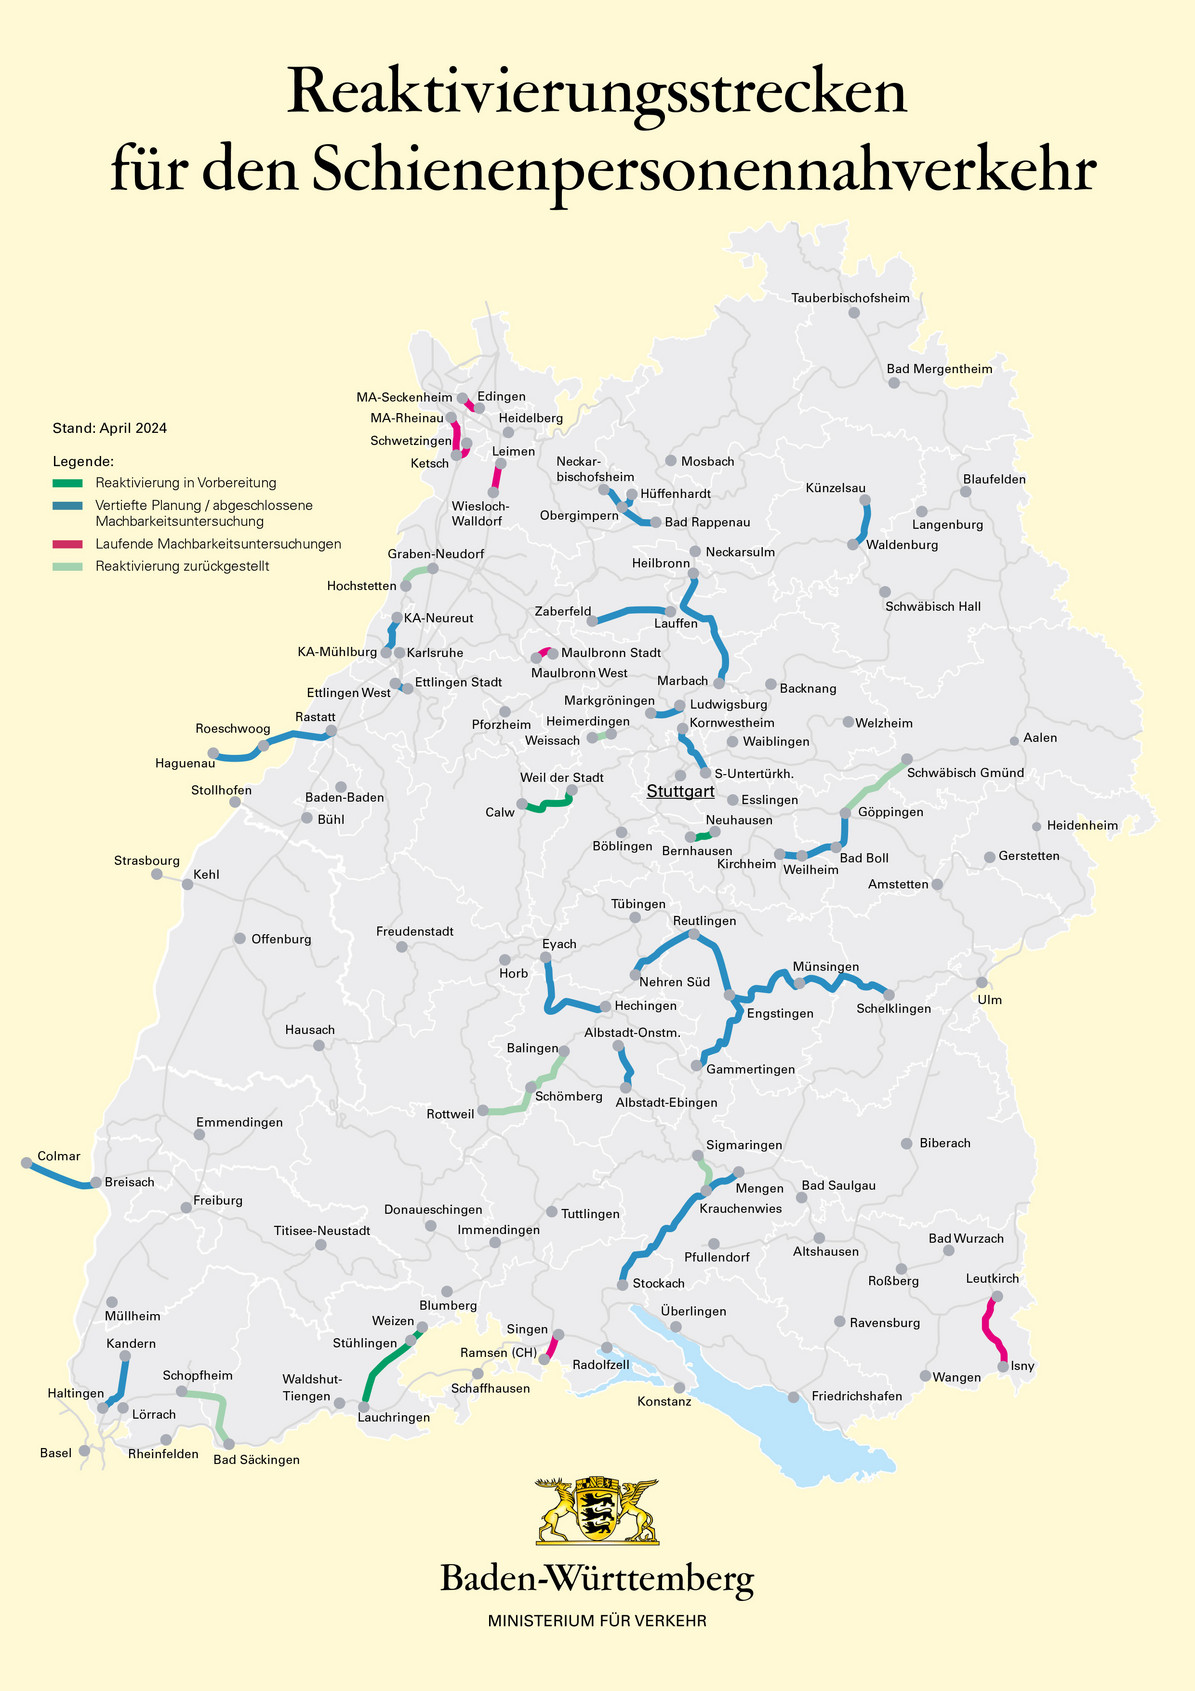 arte von Baden-Württemberg zeigt verschiedene eingezeichnete Bahnstrecken, die reaktiviert werden können. Verschiedene Farben kennzeichnen, welche bereits im Bau sind und bei welchen noch Machbarkeitsstudien durchgeführt werden.